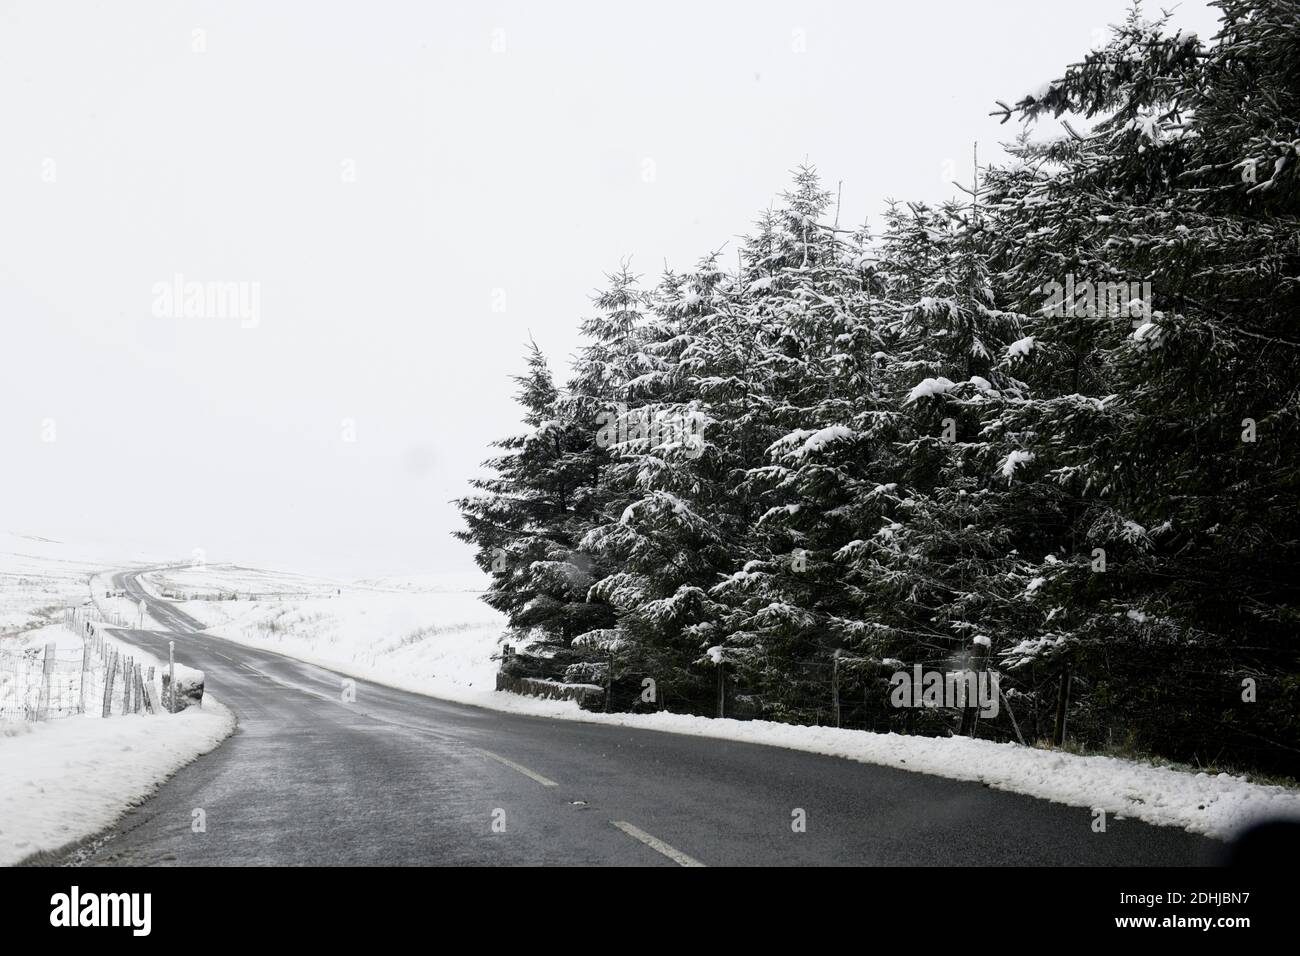 Nella foto è raffigurata una scena innevata nello Yorkshire Dales sopra Hawes. Tempo neve neve neve neve neve inverno nevicata Foto Stock